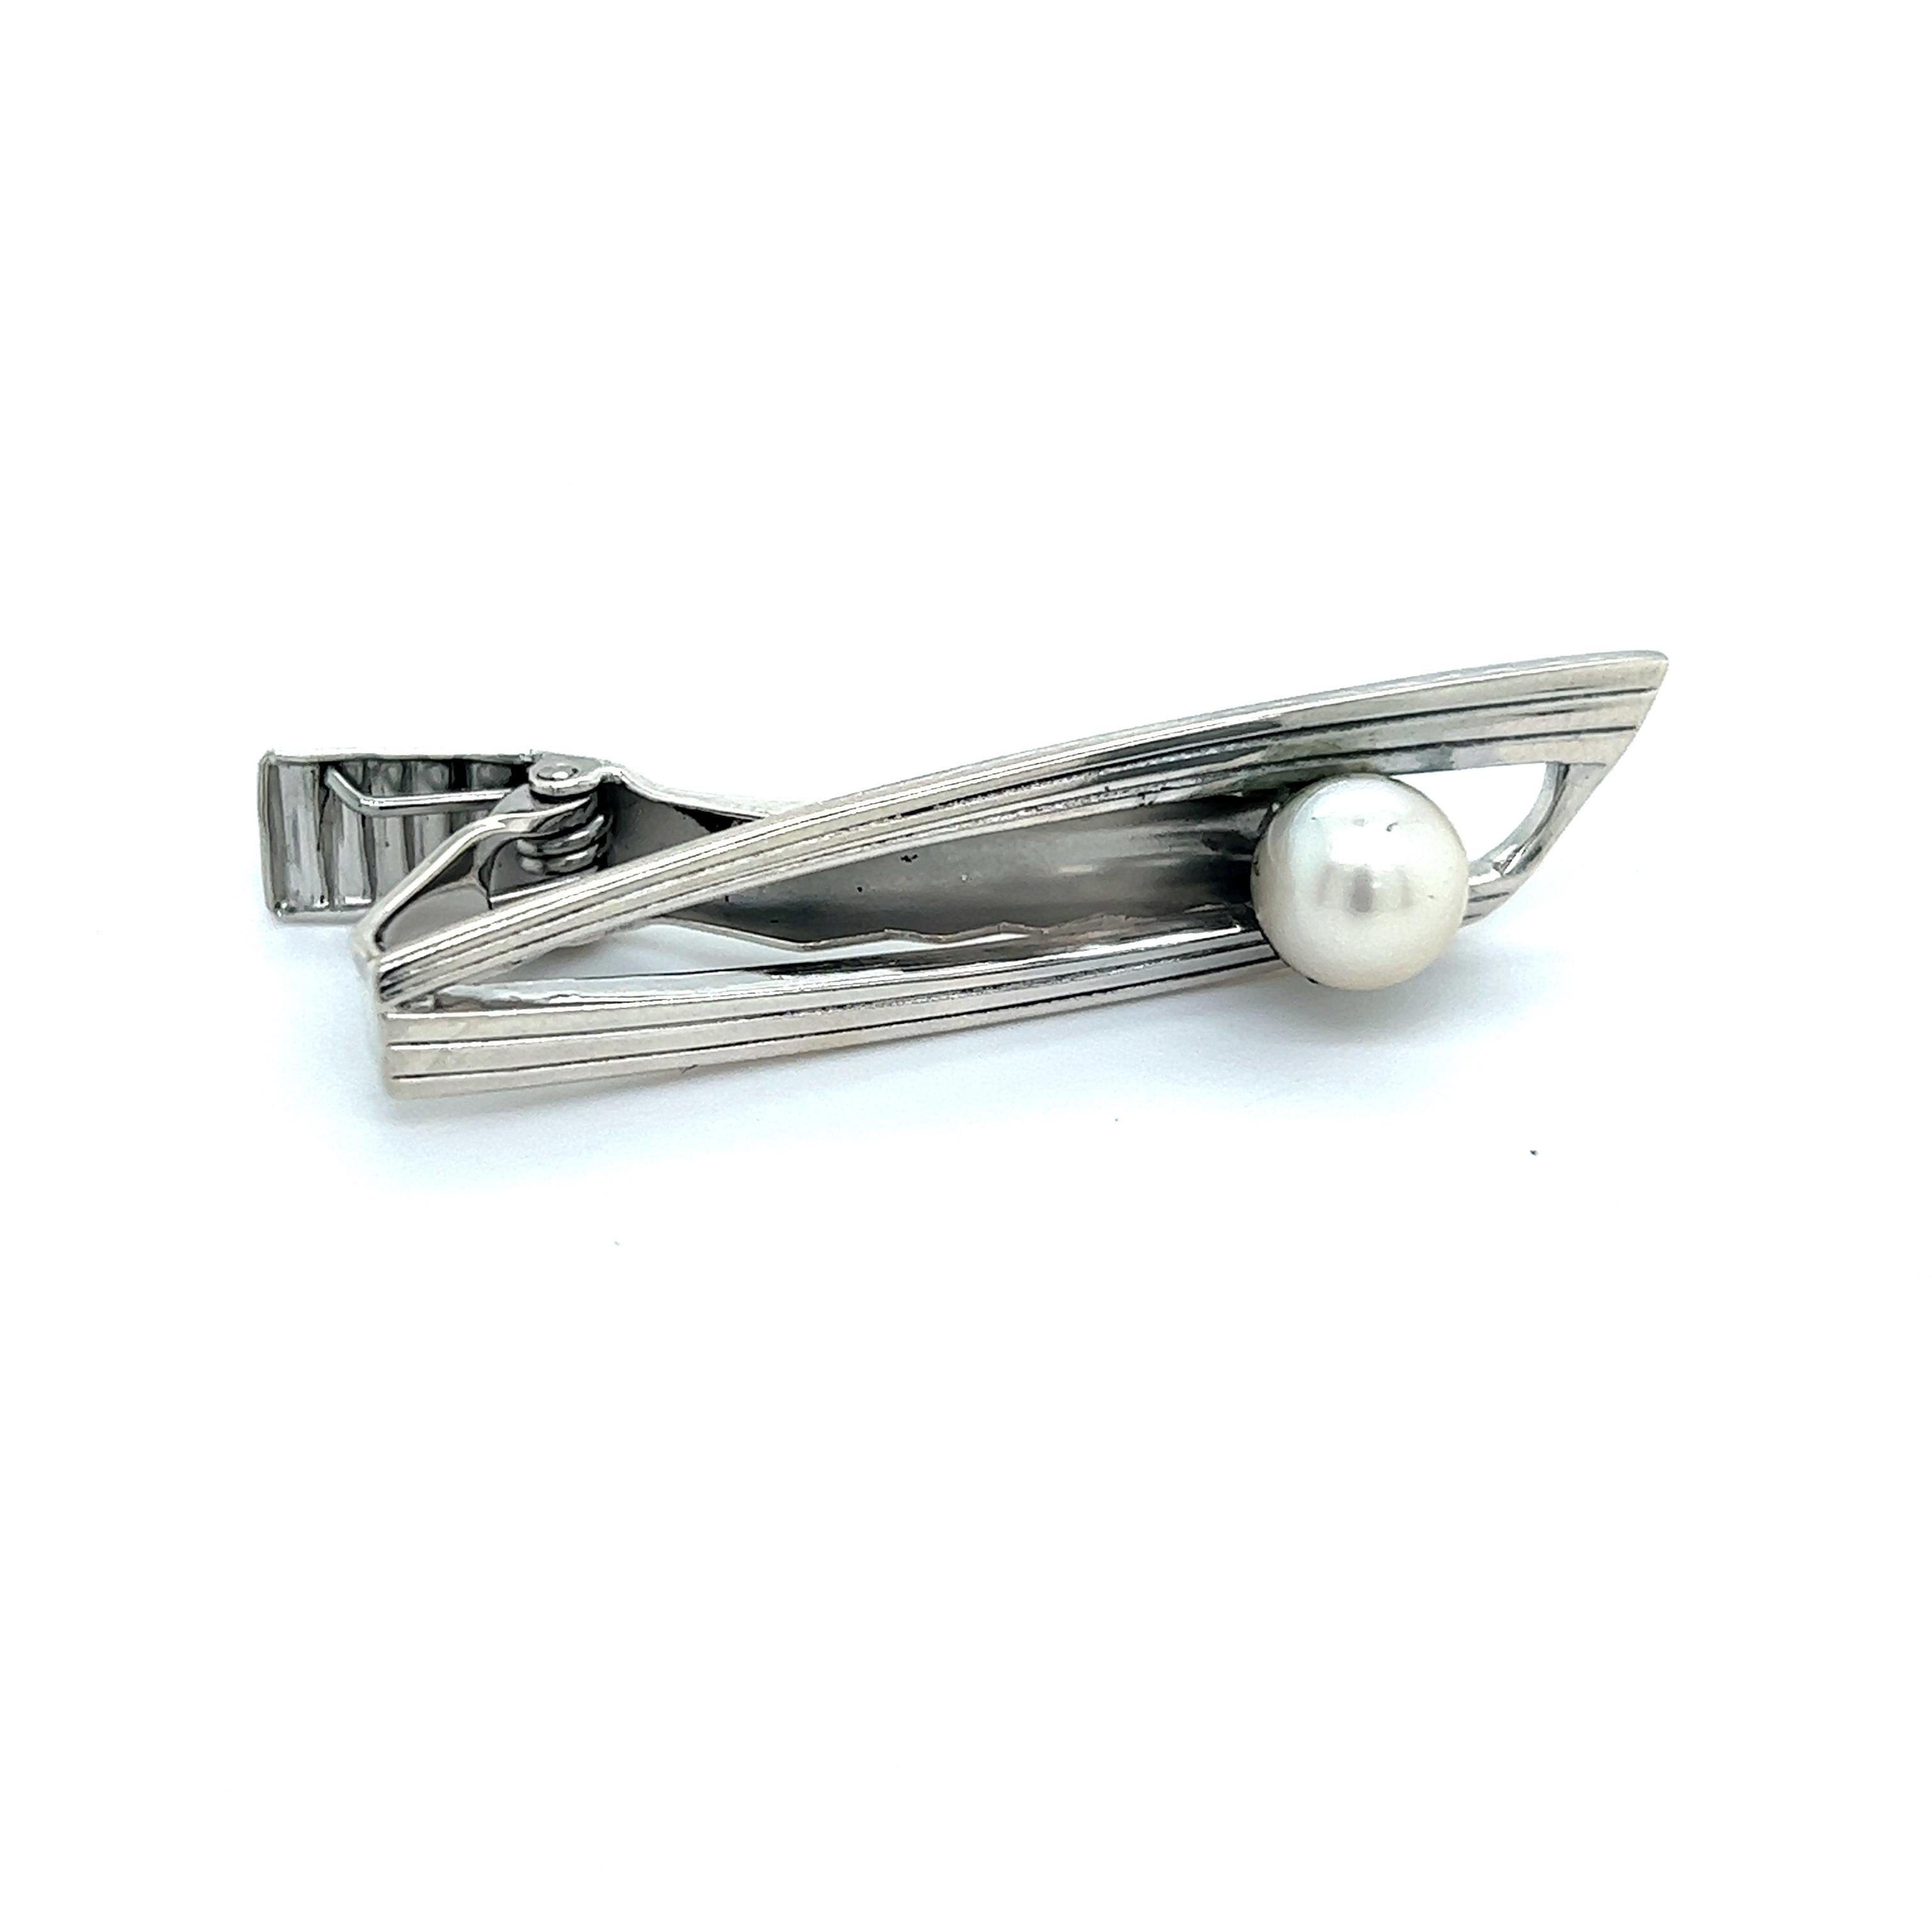 Mikimoto Estate Akoya Pearl Mens Tie Clip 7 mm Sterling Silver M316

Cette élégante pince à cravate Authentic Mikimoto Estate Akoya pearl est en argent sterling et contient une perle de culture Akoya de 7 mm pour un poids de 5,8 grammes.

VENDEUR DE